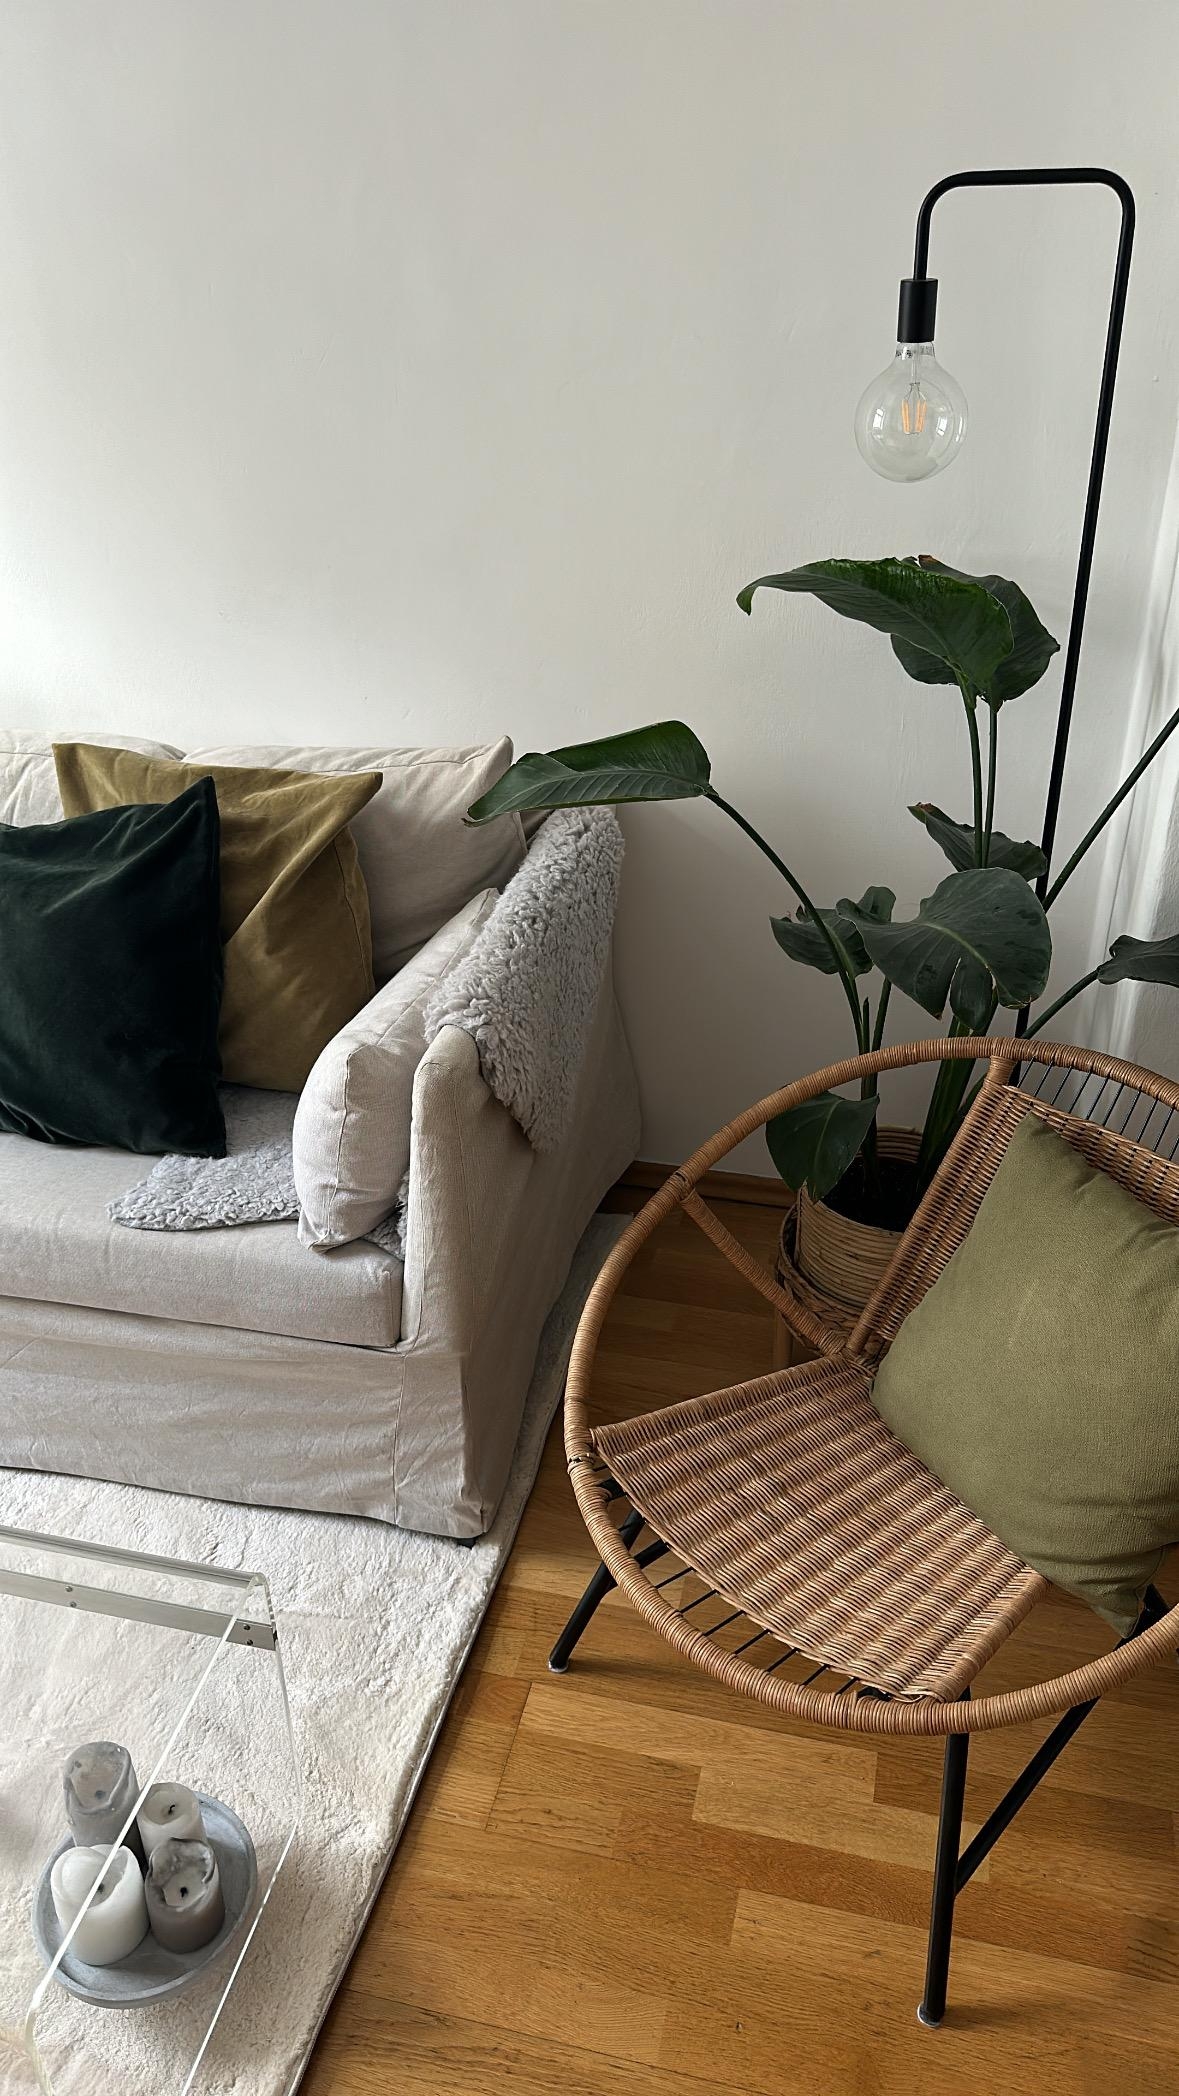 Neuer Teppich ✨

#wohnzimmer #teppich #plants #pflanzen #sofa